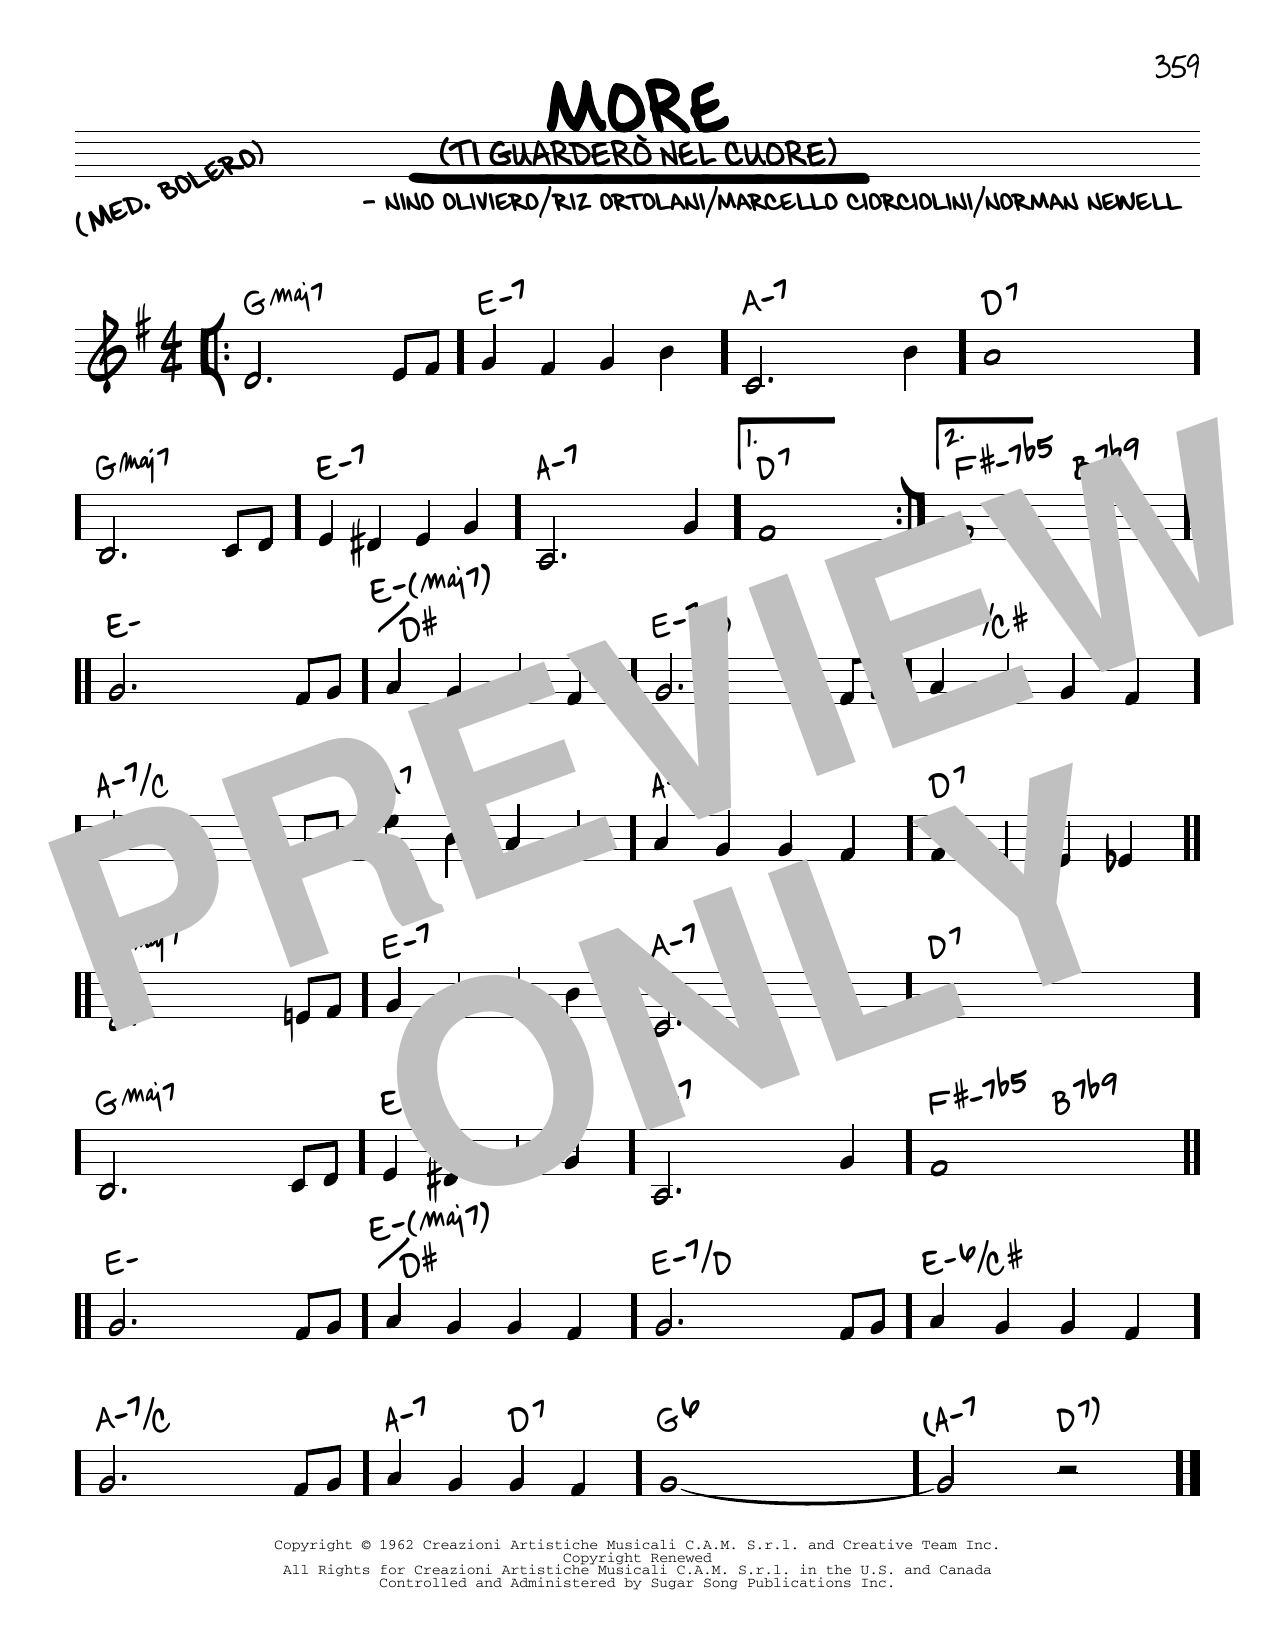 Marcello Ciorciolini More (Ti Guardero Nel Cuore) Sheet Music Notes & Chords for Accordion - Download or Print PDF